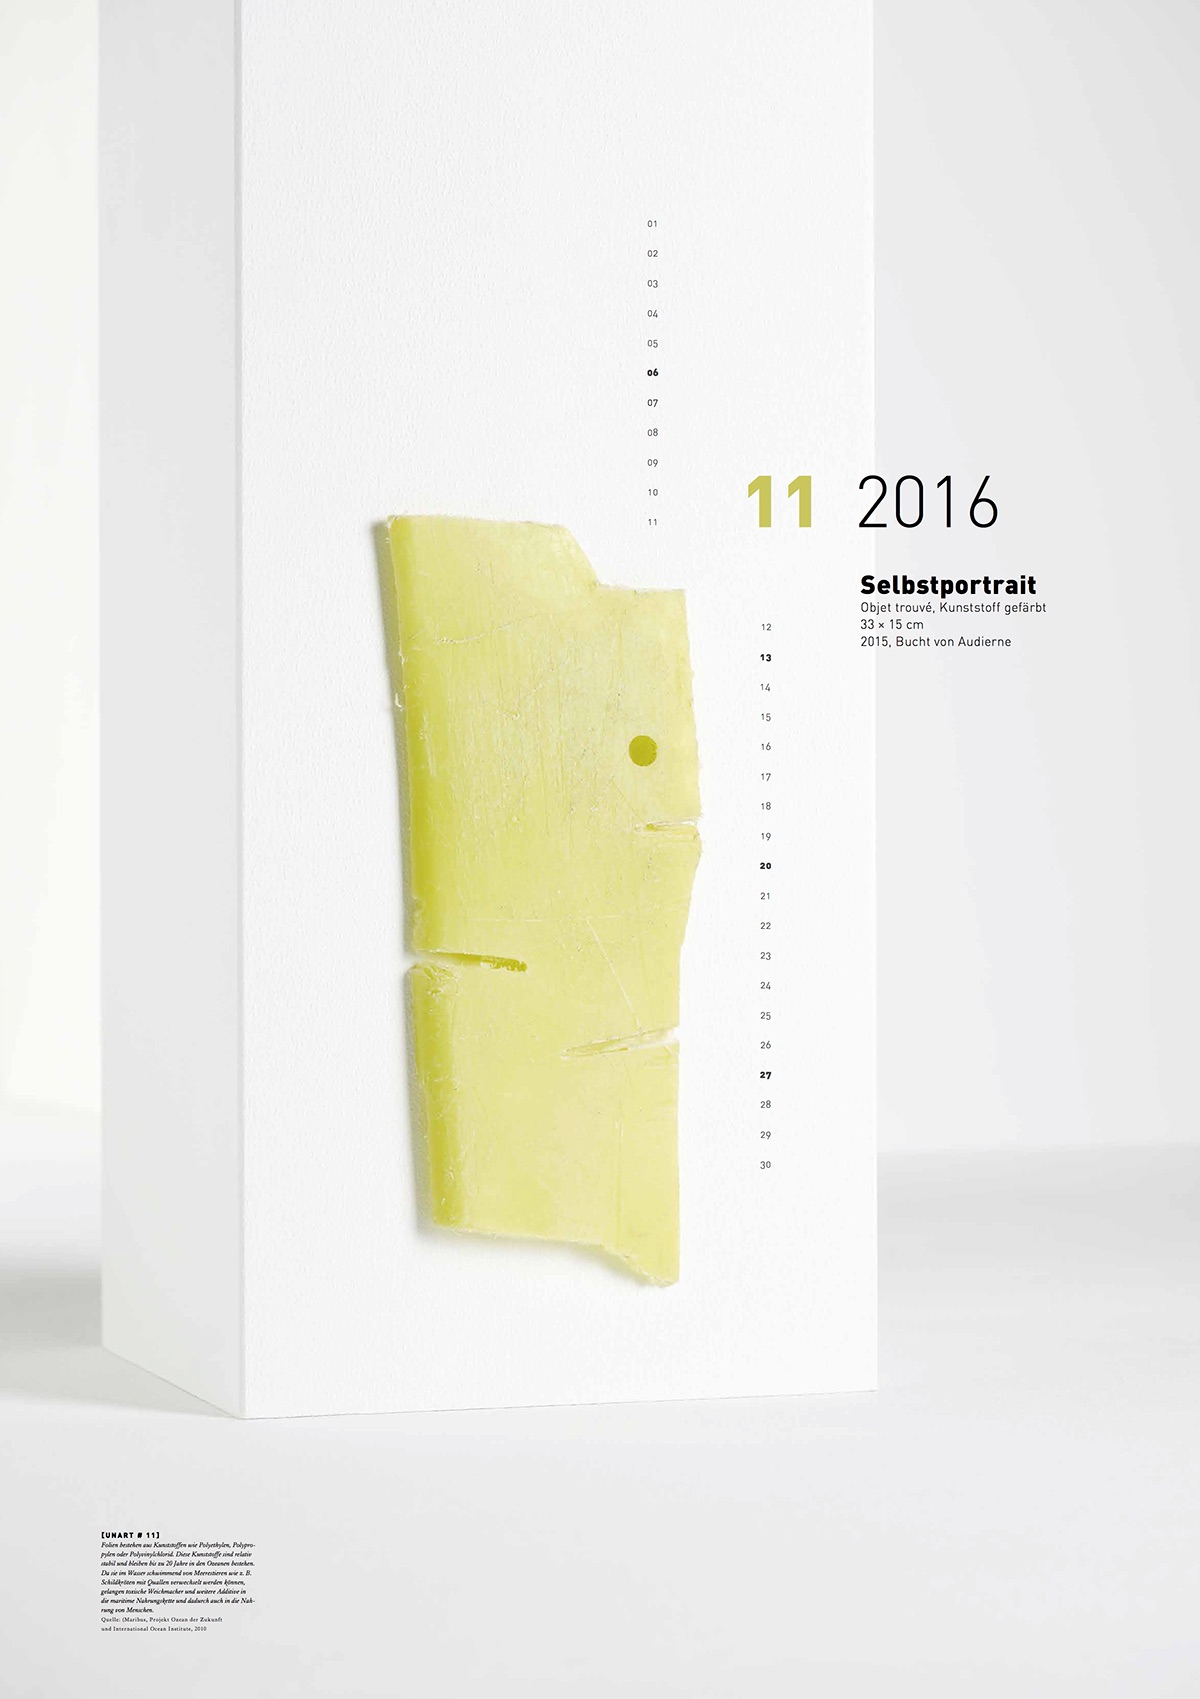 calendar kalender Inszenierung poster plakat Layout social environment waste art design